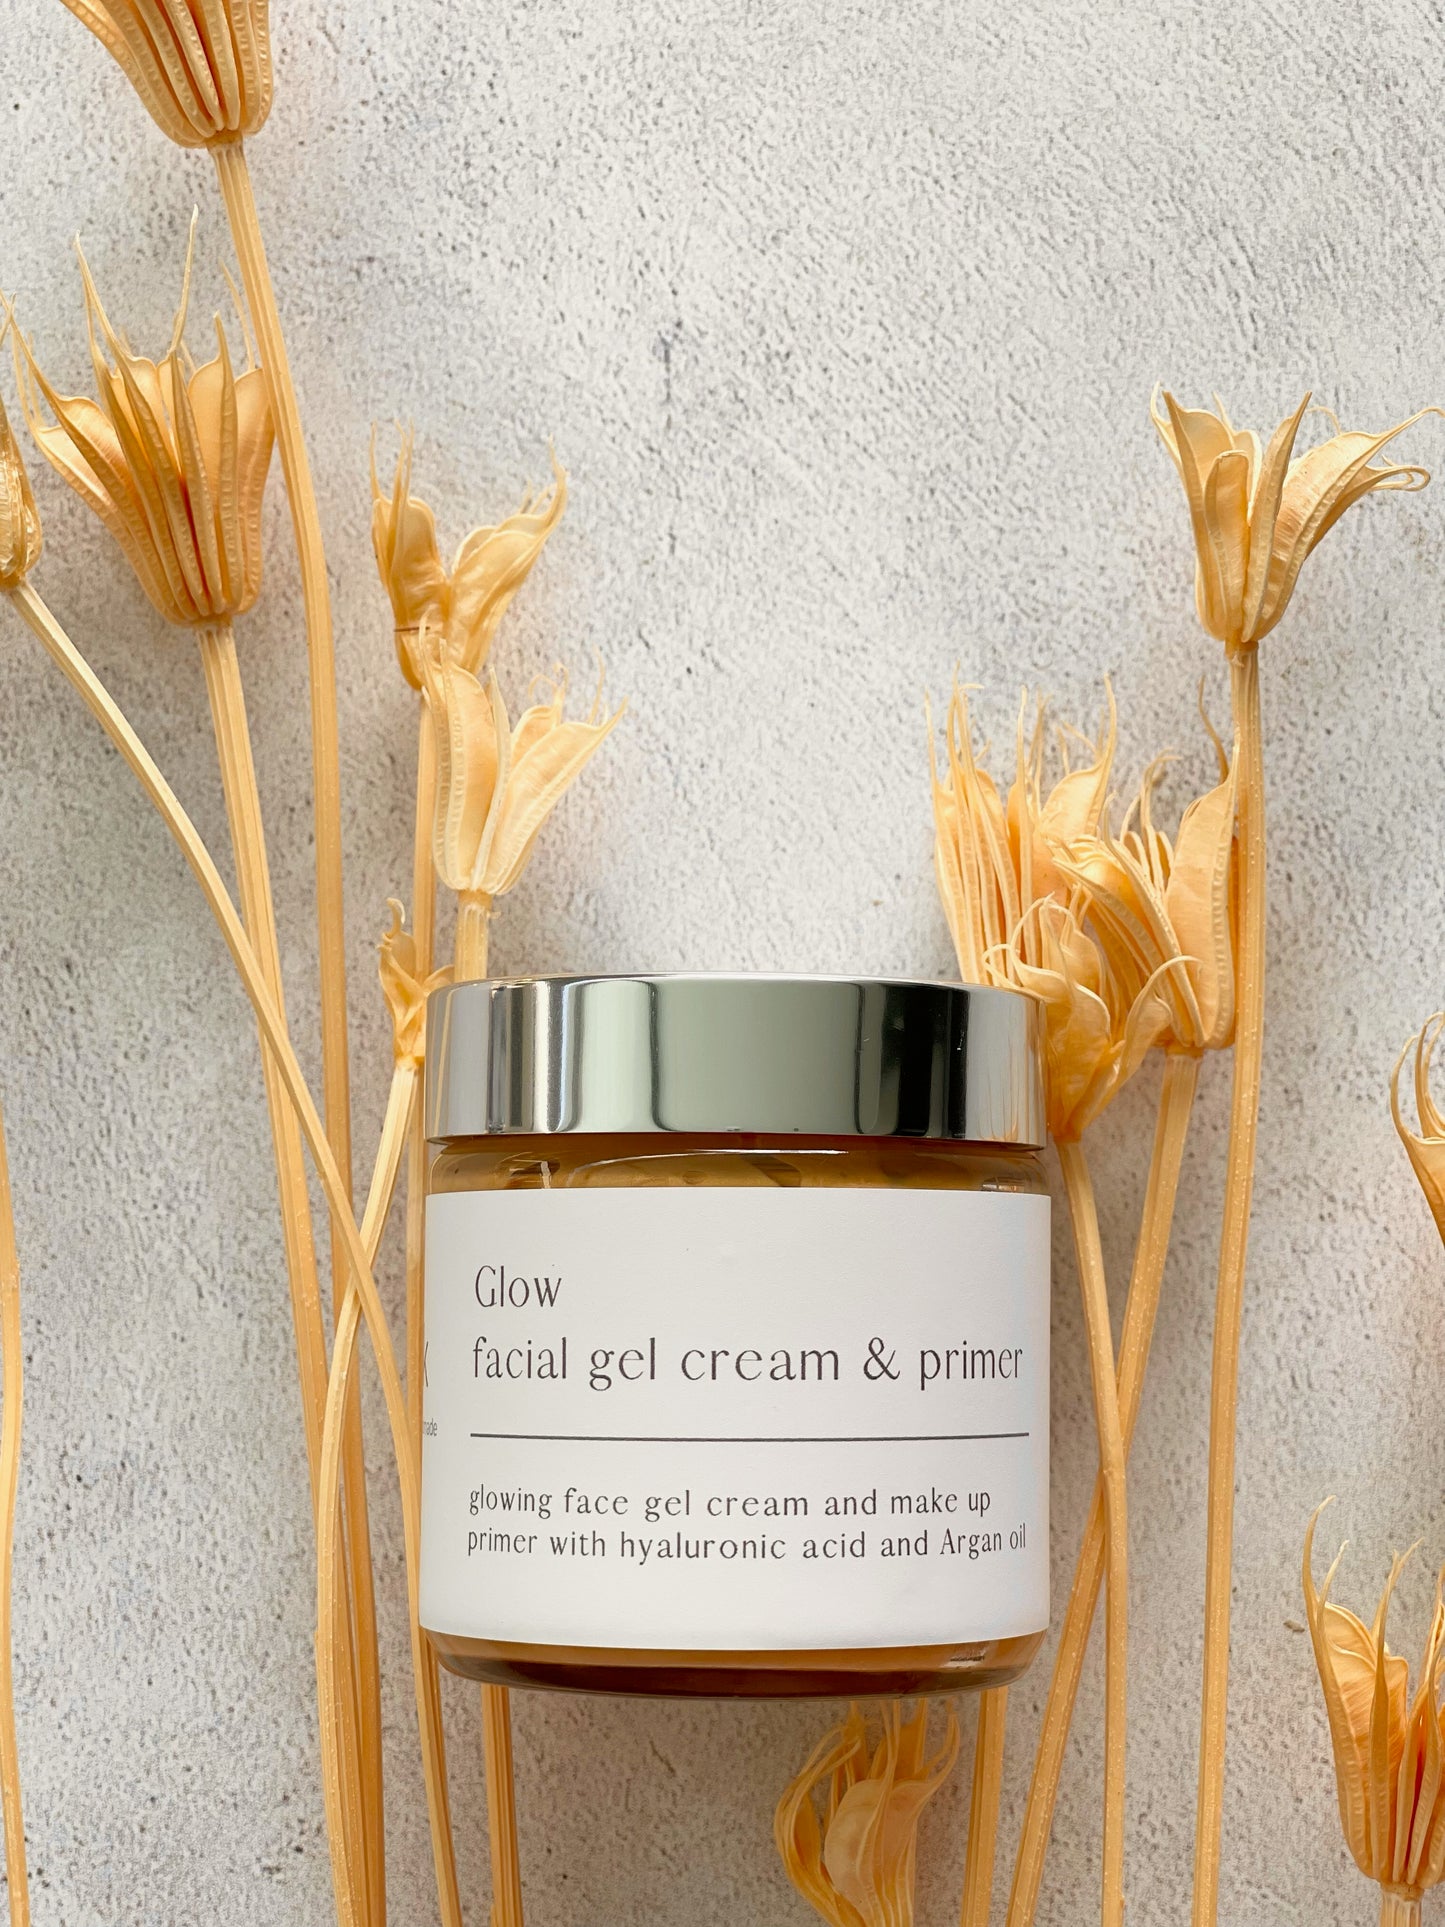 Glow - Facial gel cream & primer – melk naturals